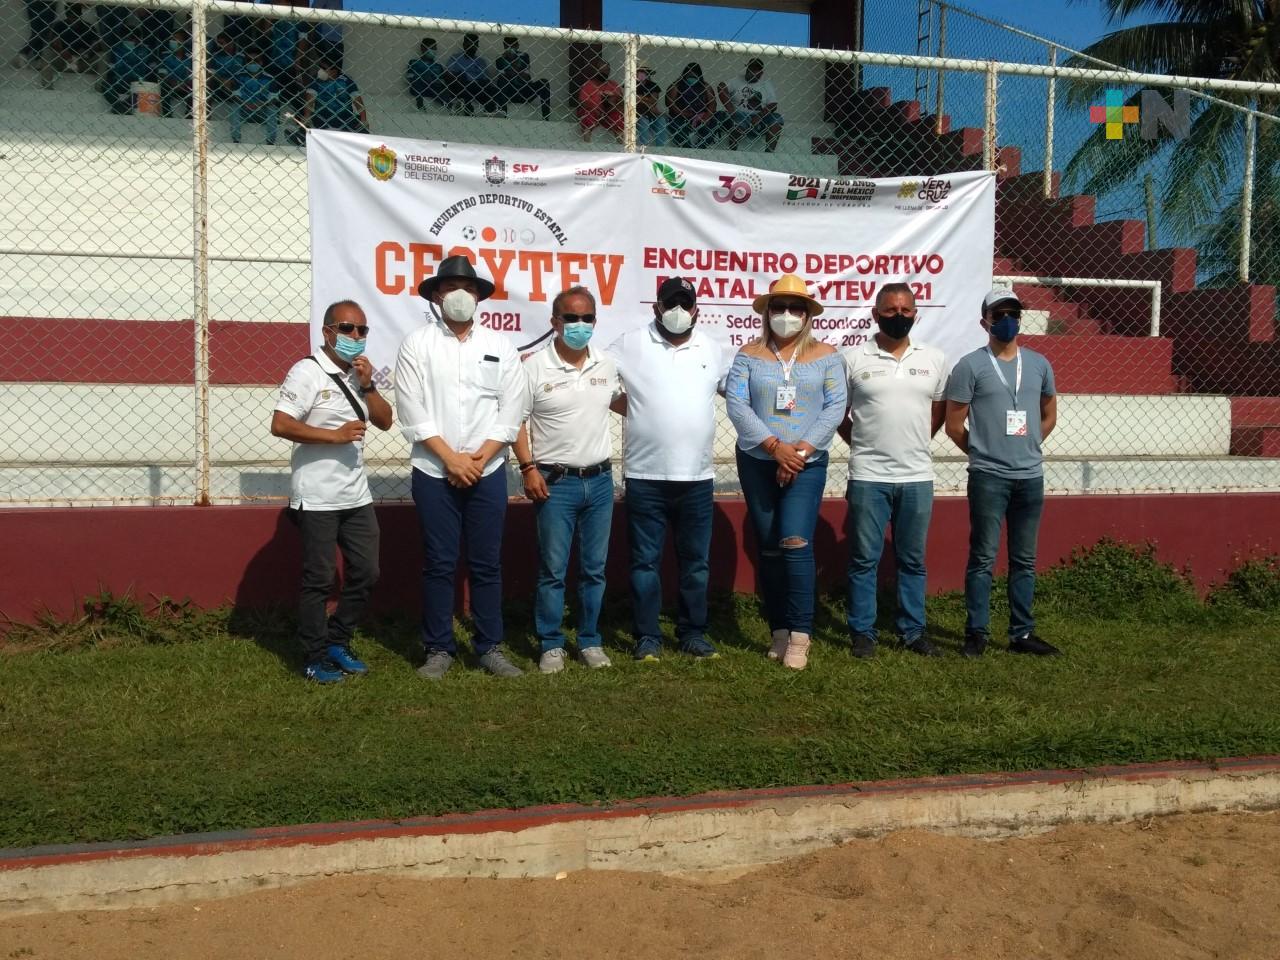 Veracruz rumbo a Encuentro Deportivo Nacional CECYTES